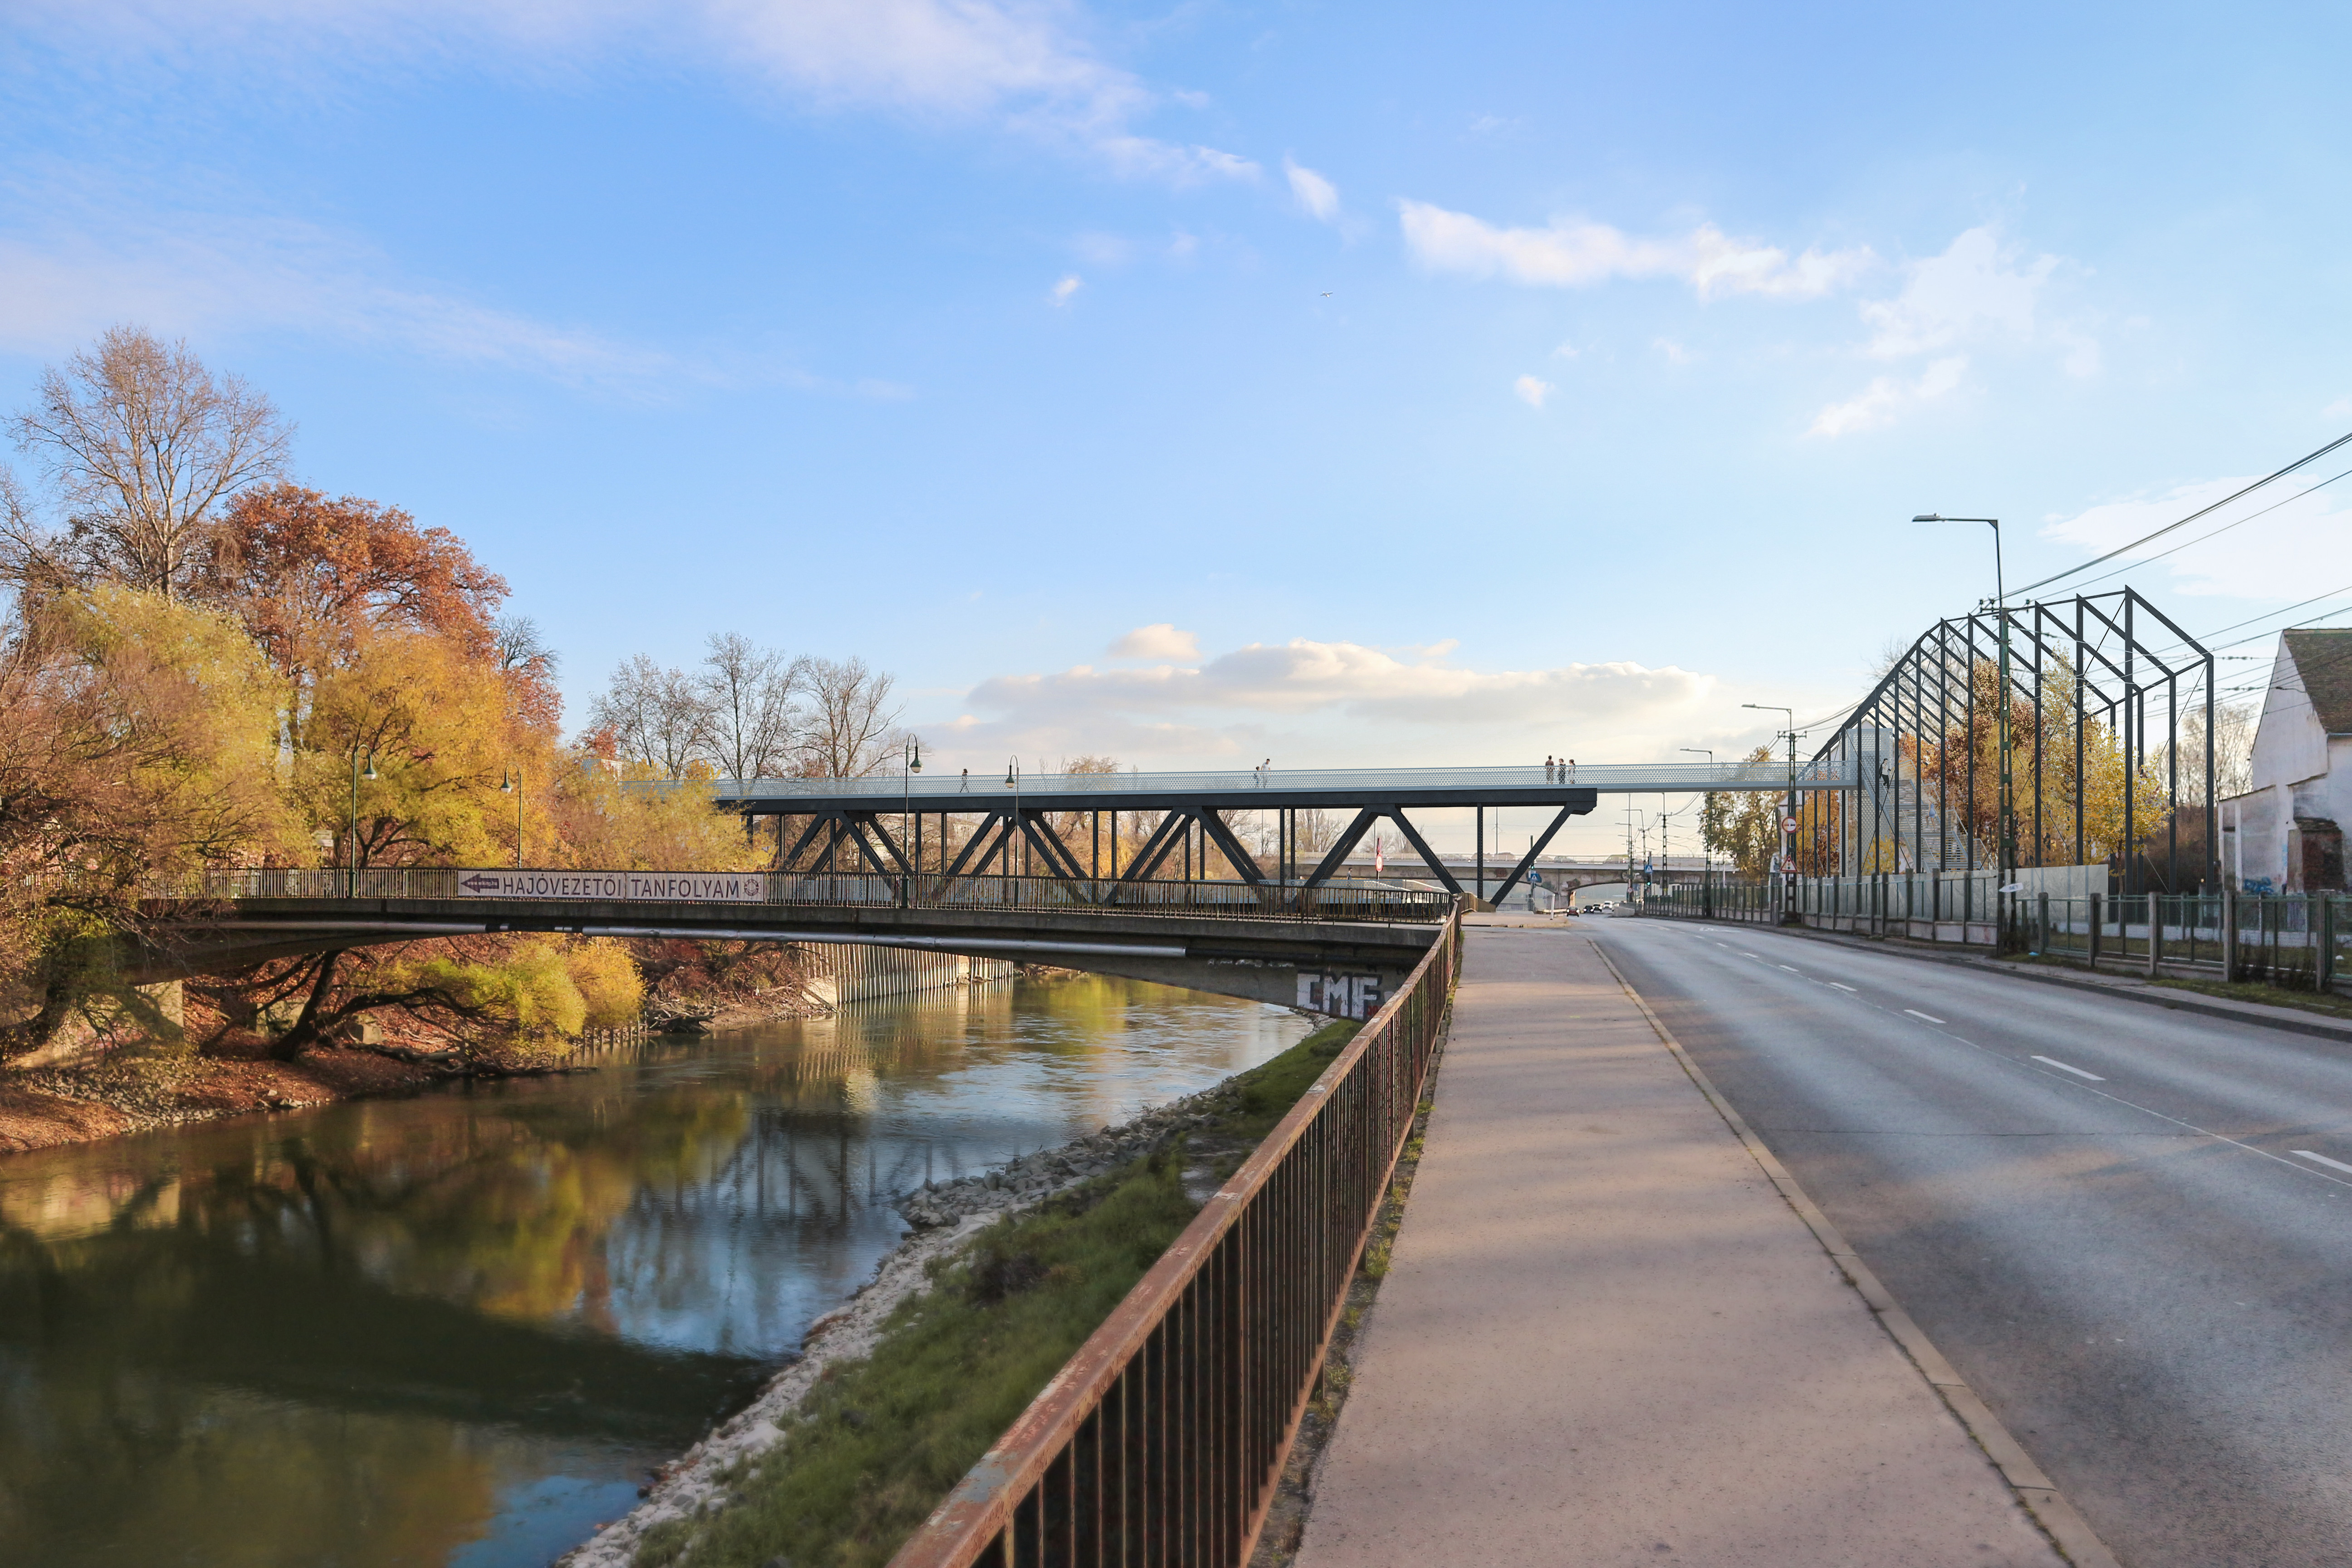 Új gyalogos-bringás híd épül a budapesti Dunán, a déli vasúti híd egyik darabját használják fel hozzá